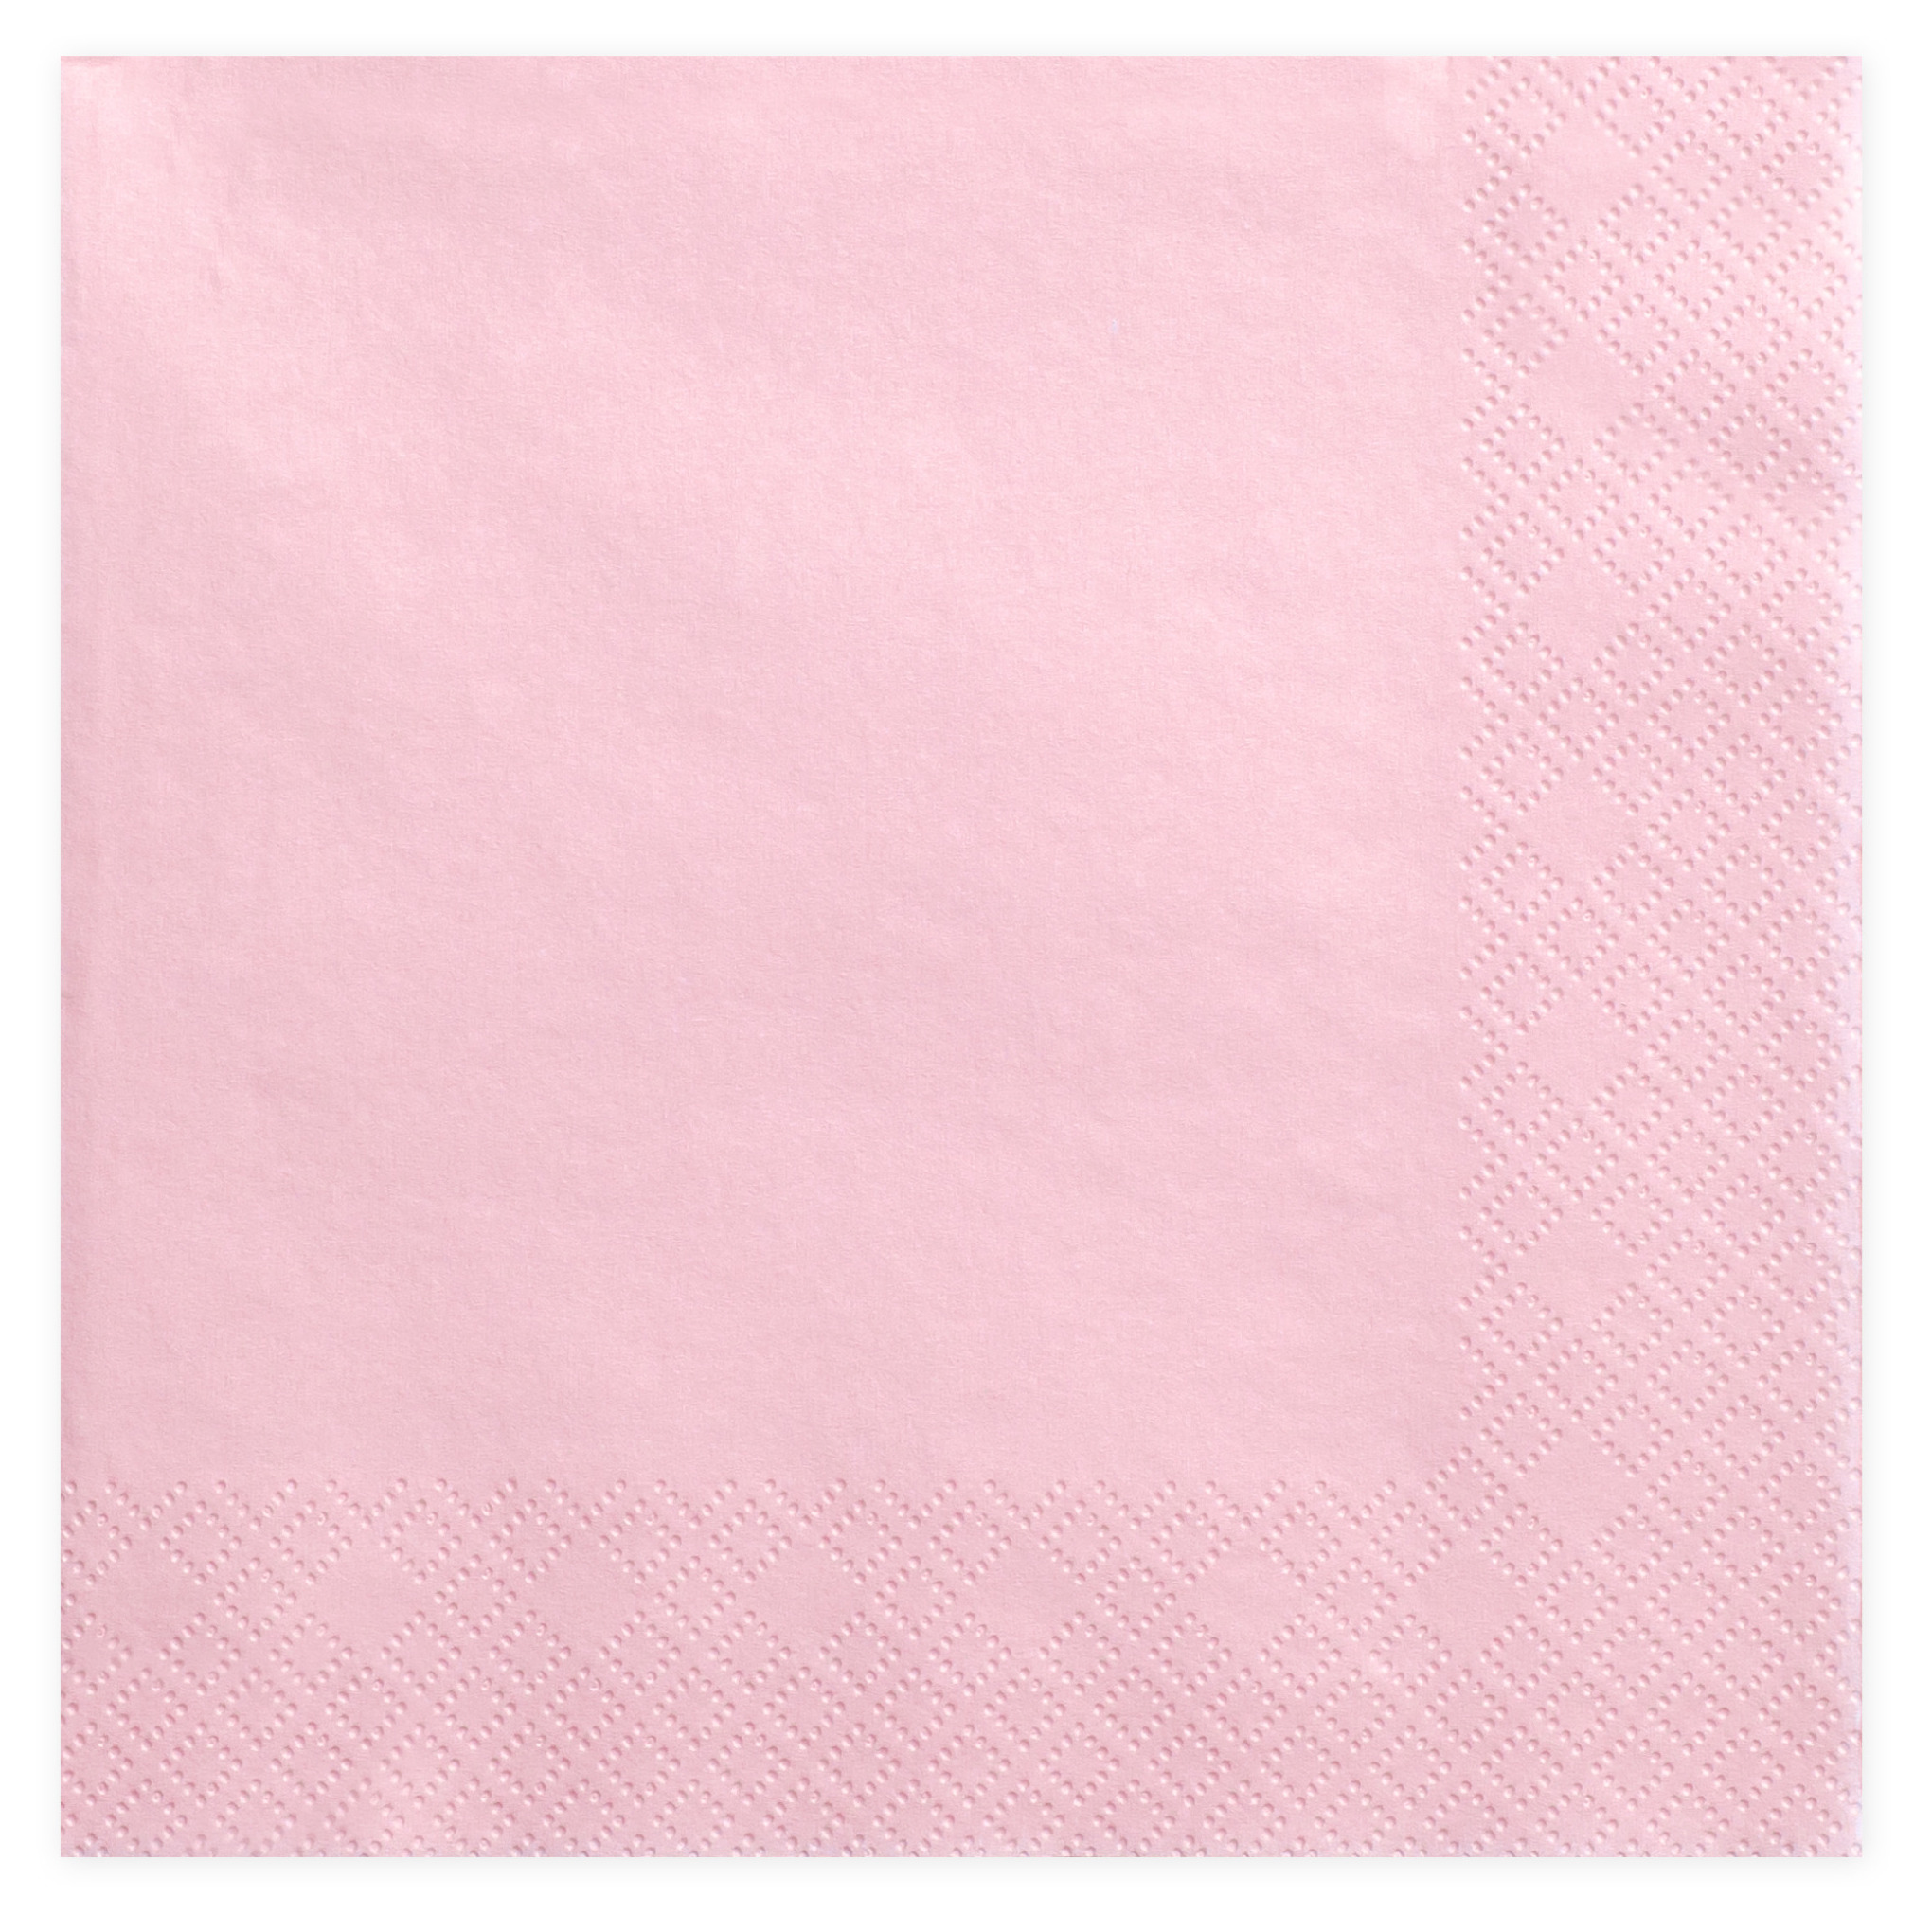 PartyDeco 20x Papieren tafel servetten roze 33 x 33 cm -